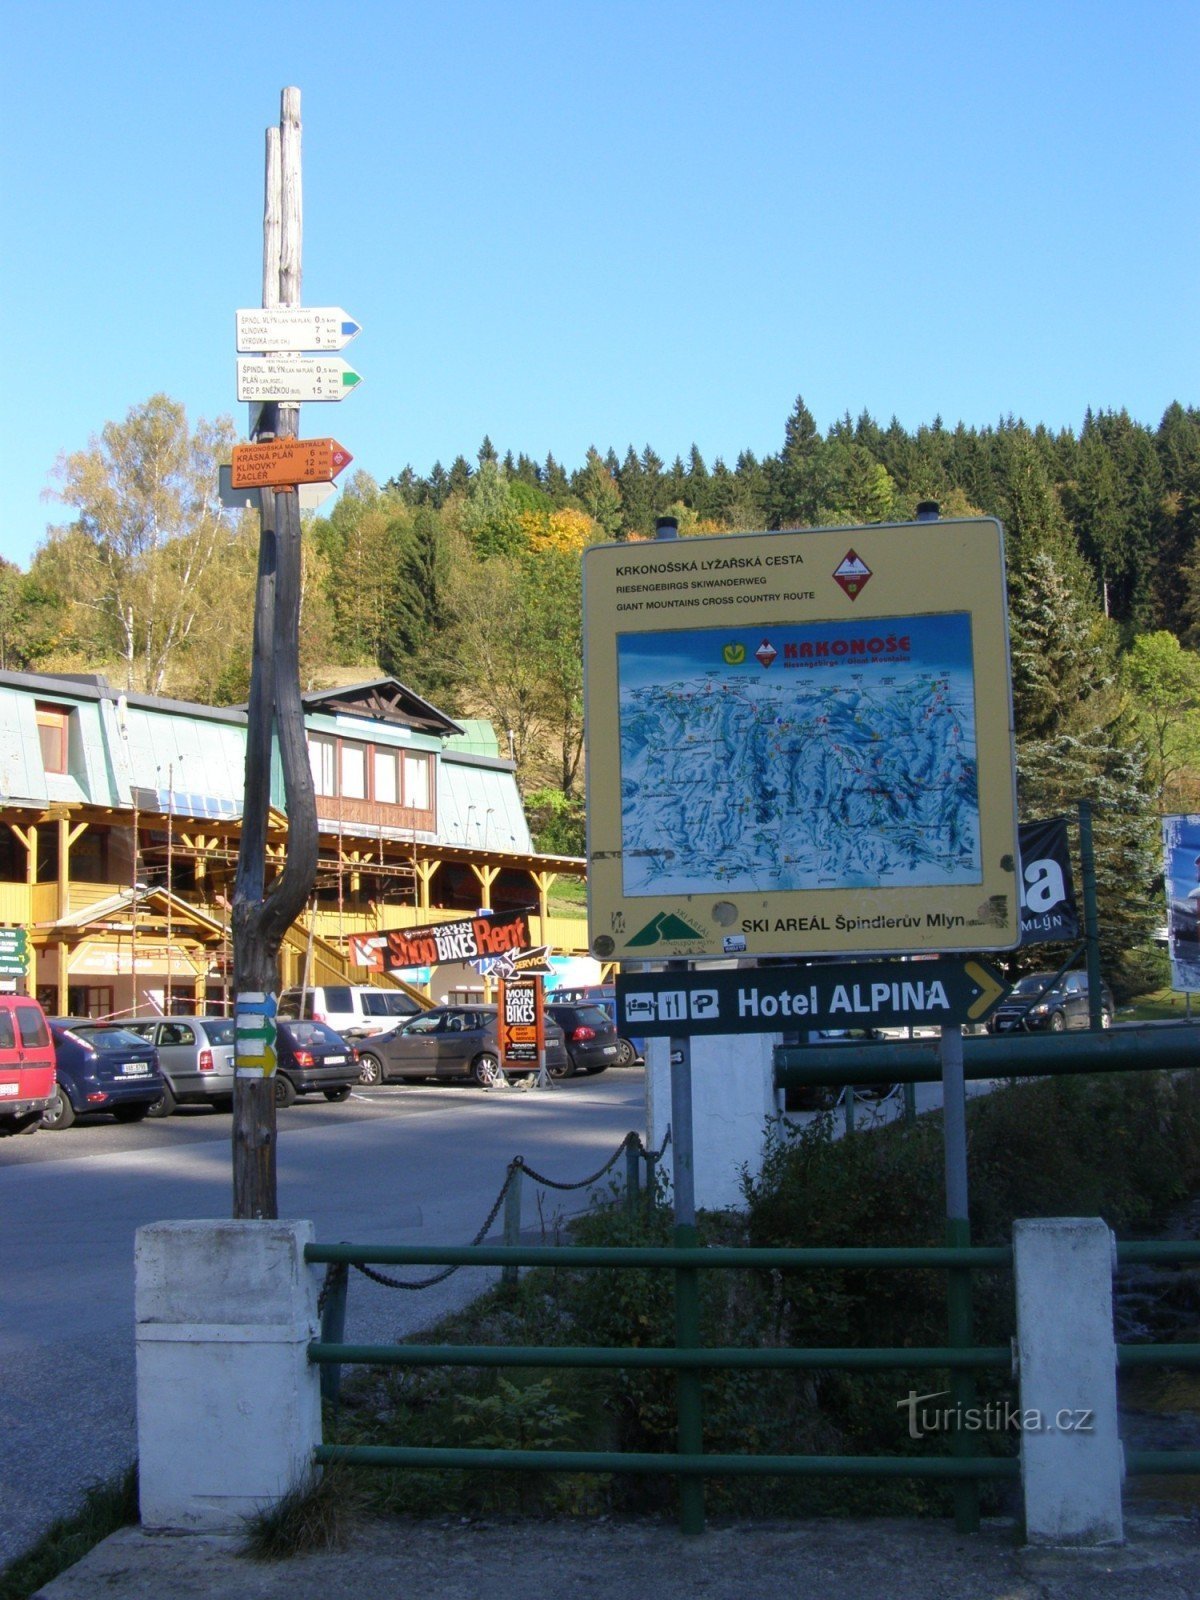 Τουριστικό σταυροδρόμι Špindlerův Mlýn - στο κέντρο πληροφοριών